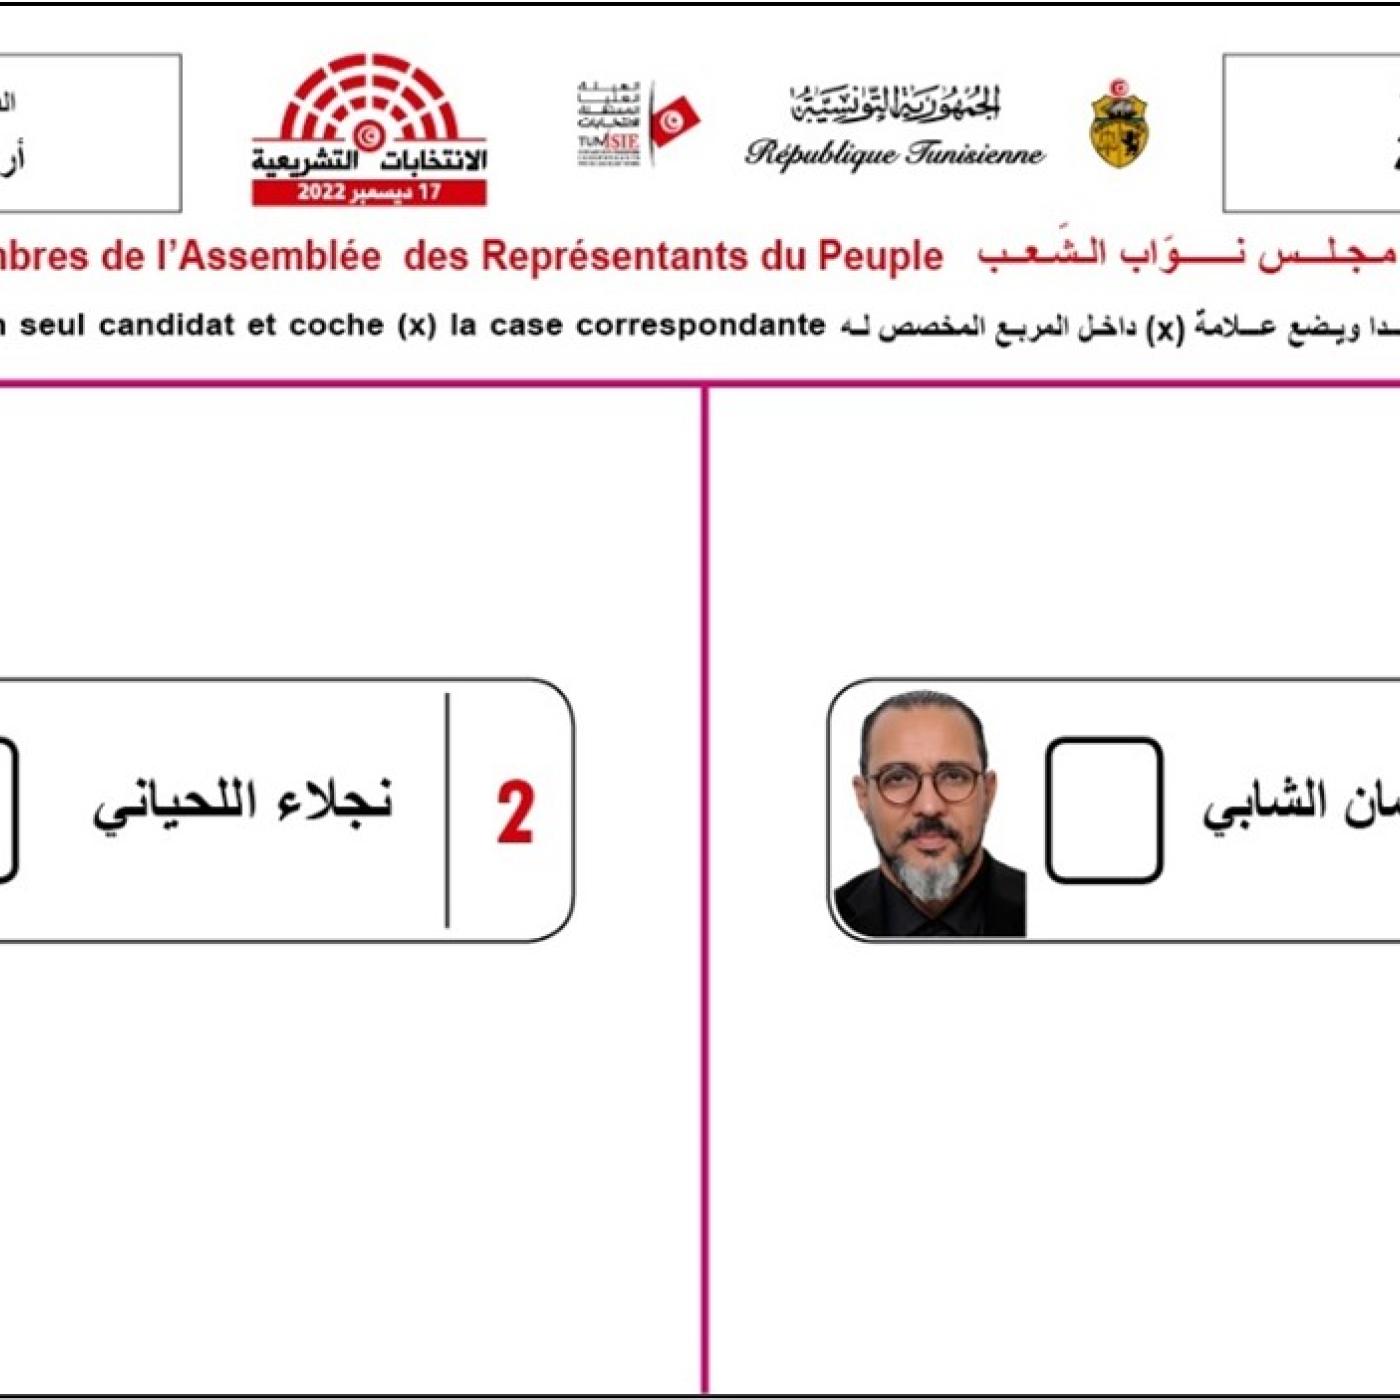 An image of a 2022 Tunisian electoral ballot.